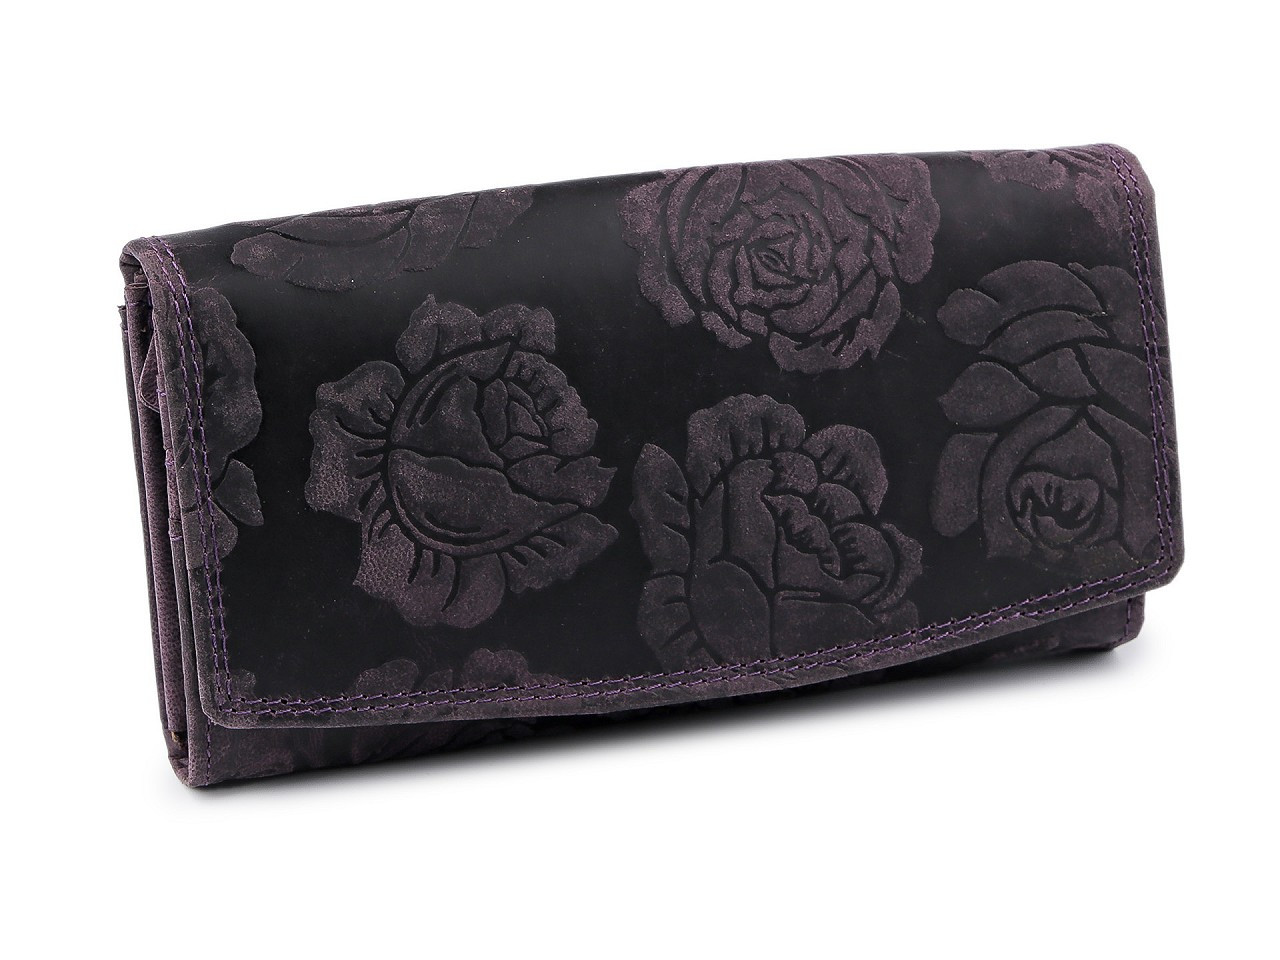 Dámská peněženka kožená růže, ornamenty 9,5x18 cm, barva 4 fialová temná